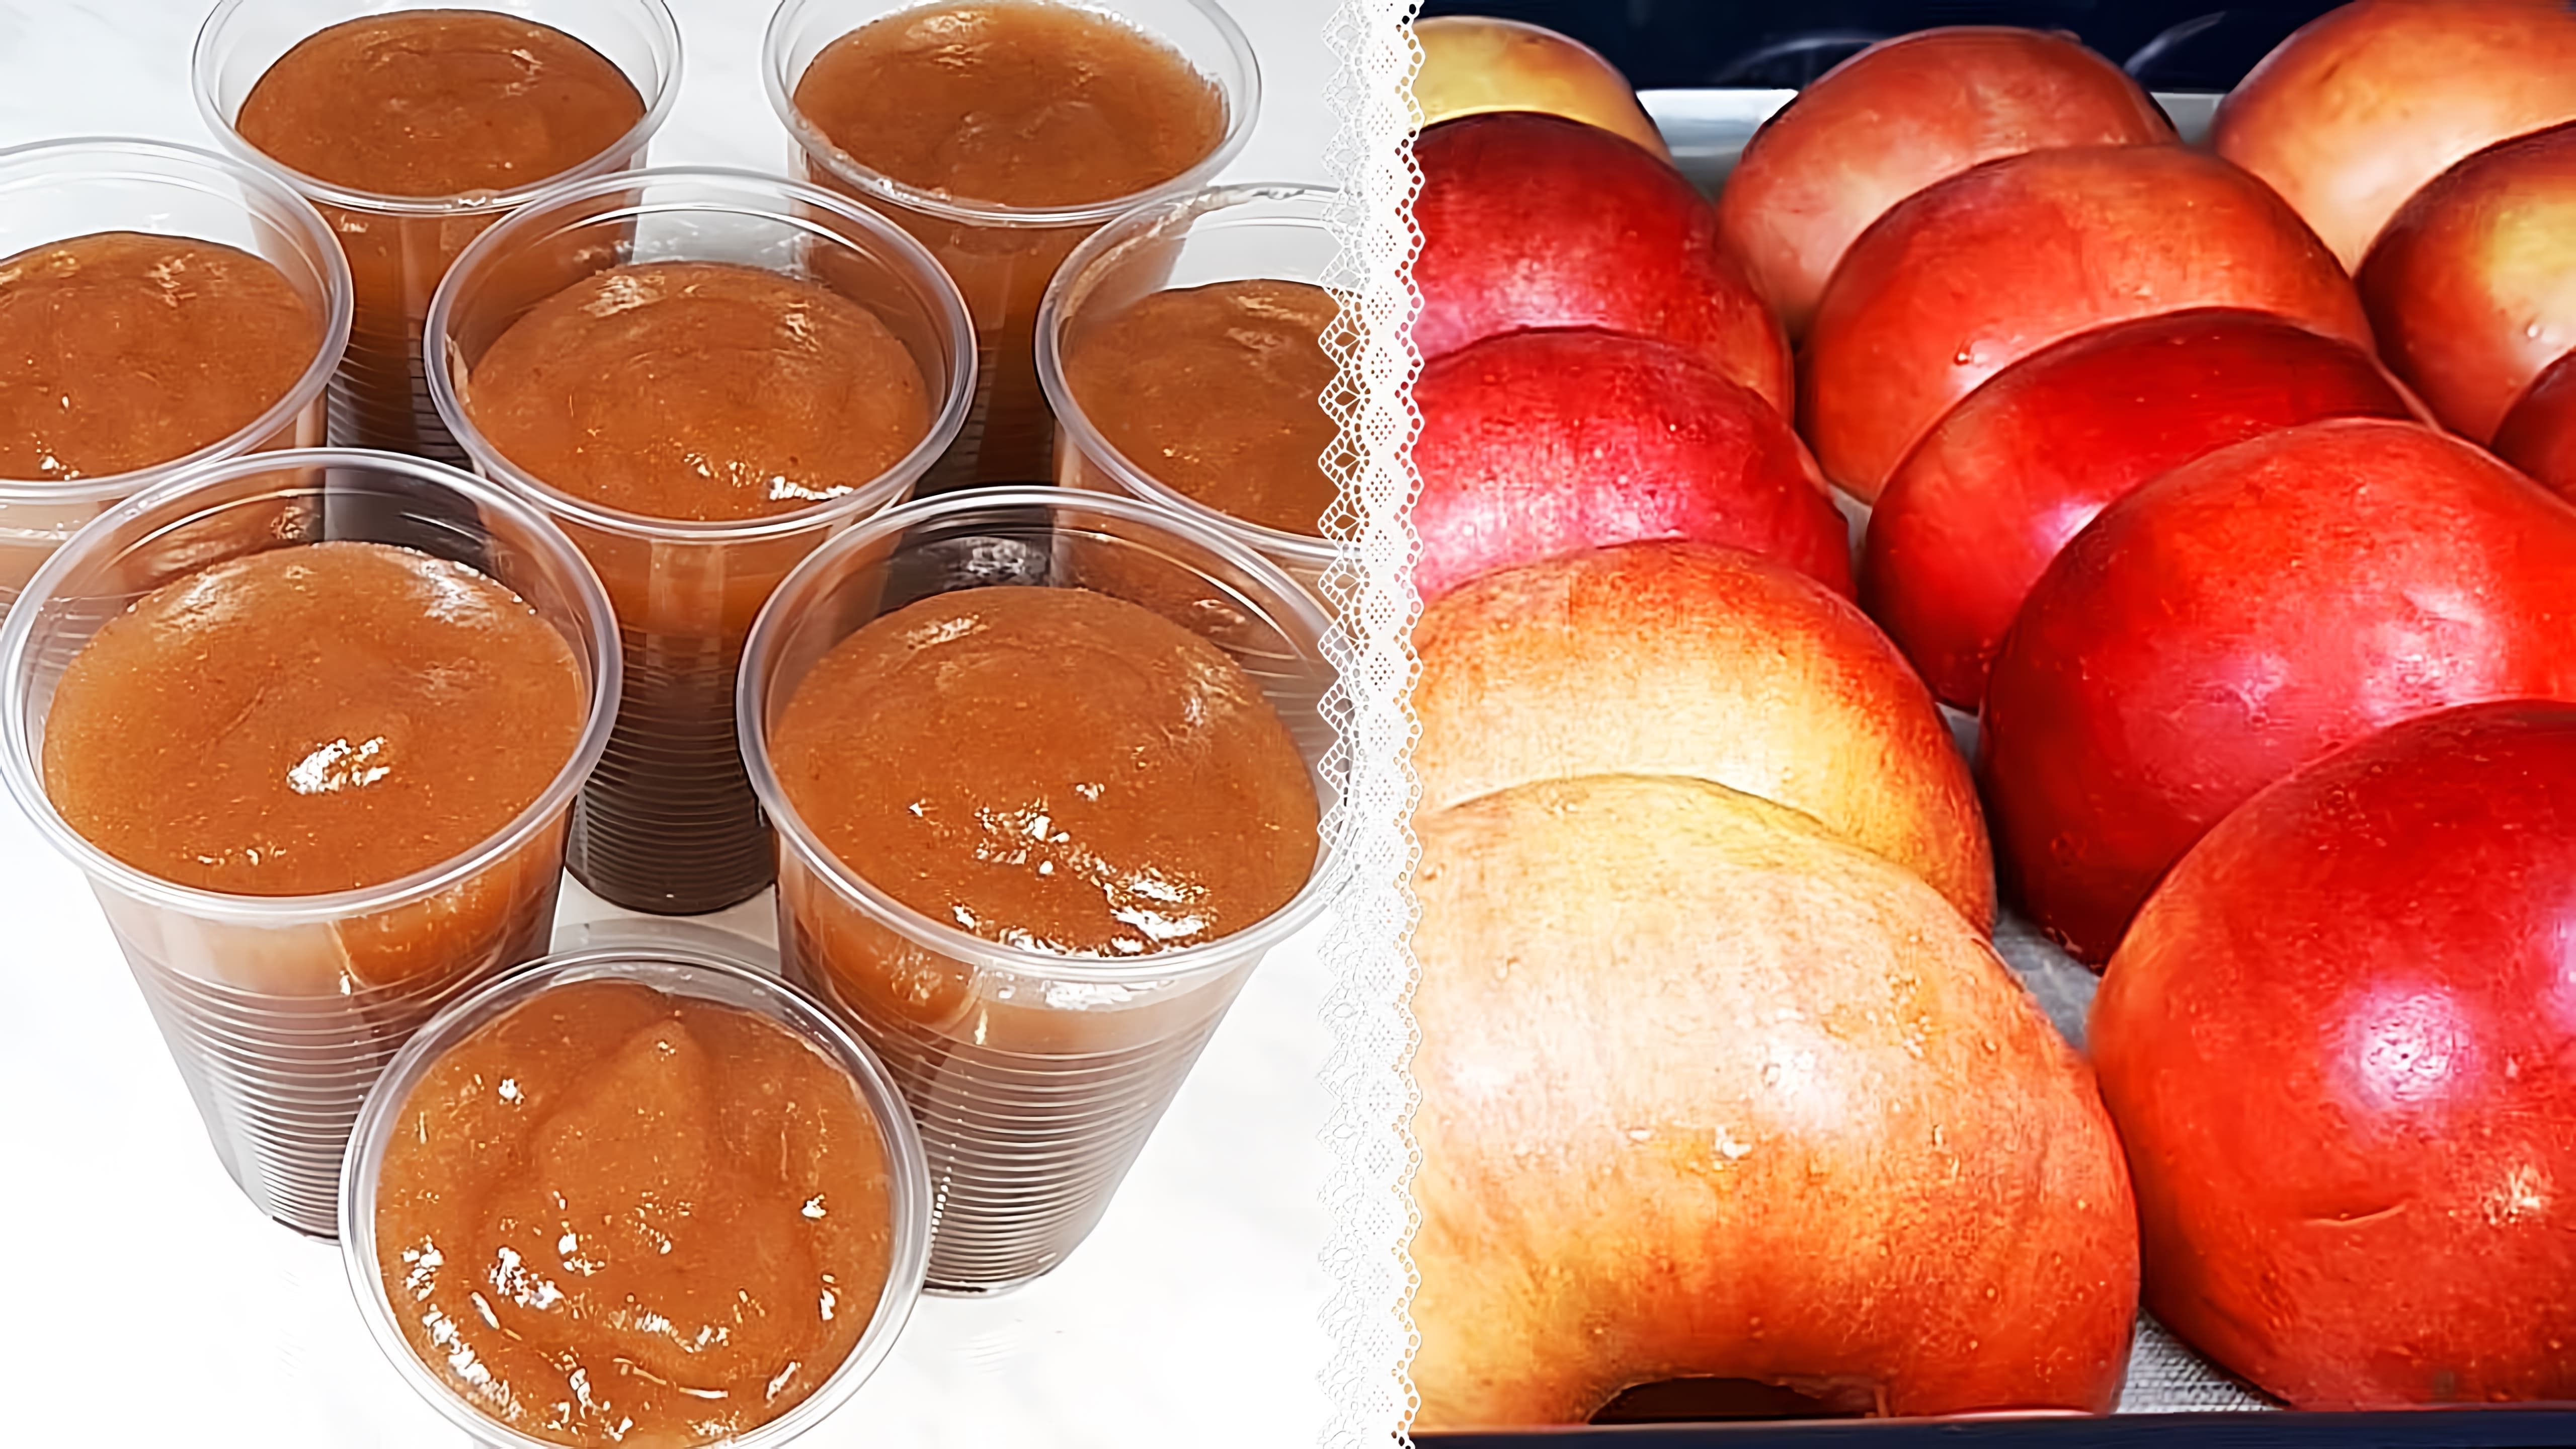 В этом видео демонстрируется простой и быстрый способ приготовления яблочного пюре без уваривания